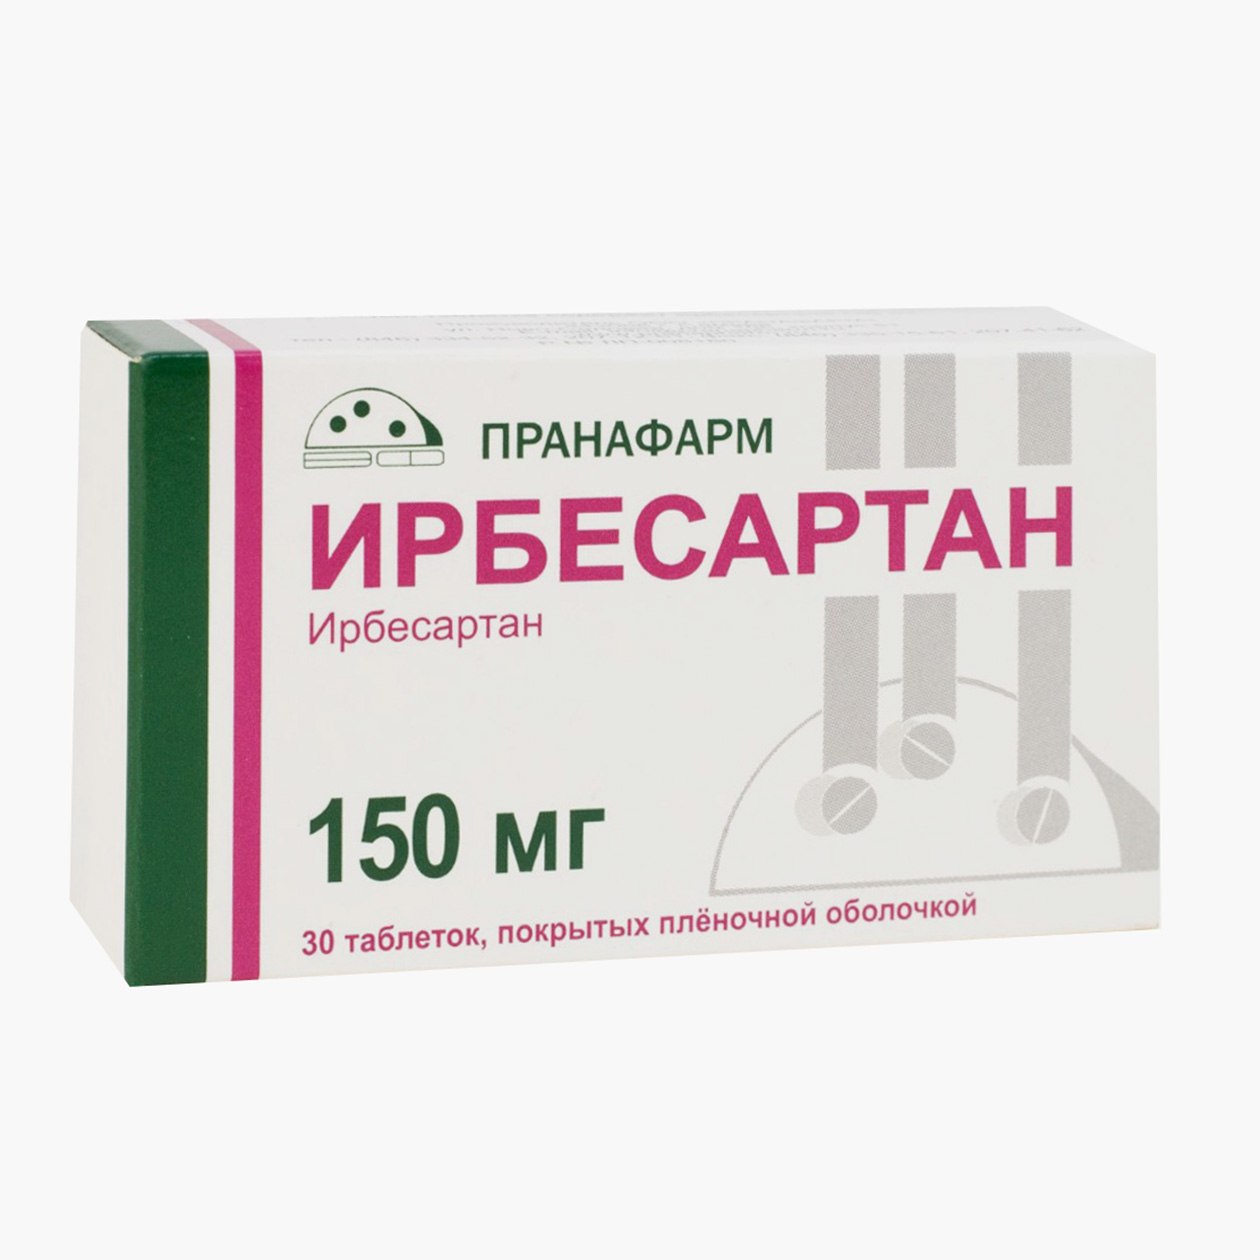 «Ирбесартан», 150 мг. Аналог по действующему веществу стоит более чем в два раза дешевле оригинала